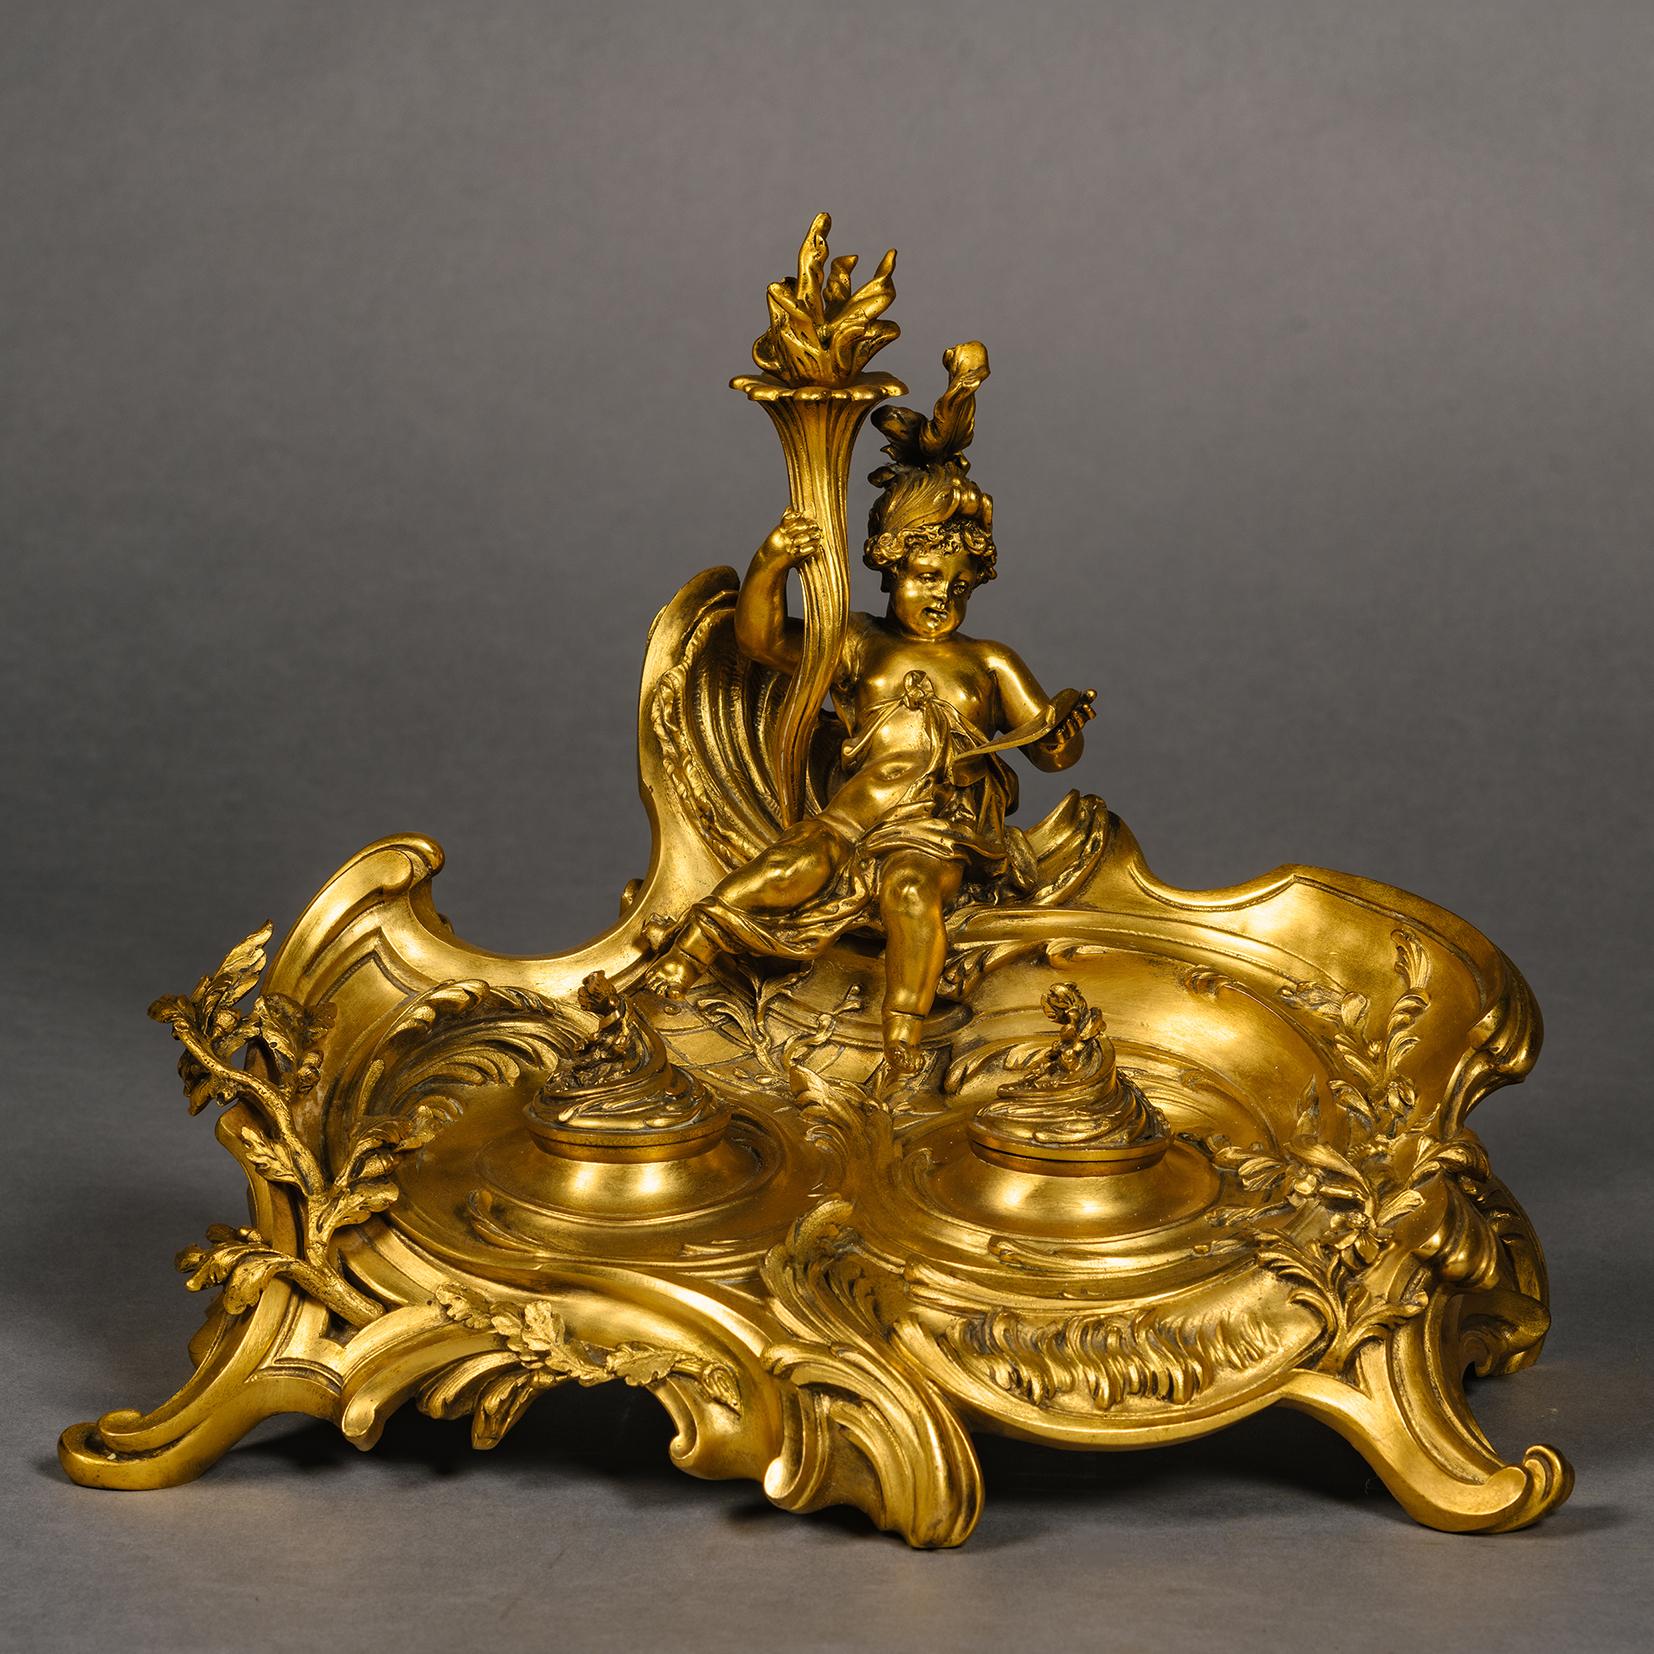 Seltenes vergoldetes Bronzetintenfass im Louis XV-Stil. Entworfen von Léon Messagé und gegossen von der Gießerei Ferdinand Barbedienne, Paris. 

Im überschwänglichen Rokokostil gestaltet, überragt von einer sitzenden Amor-Figur als Liebesbote, der